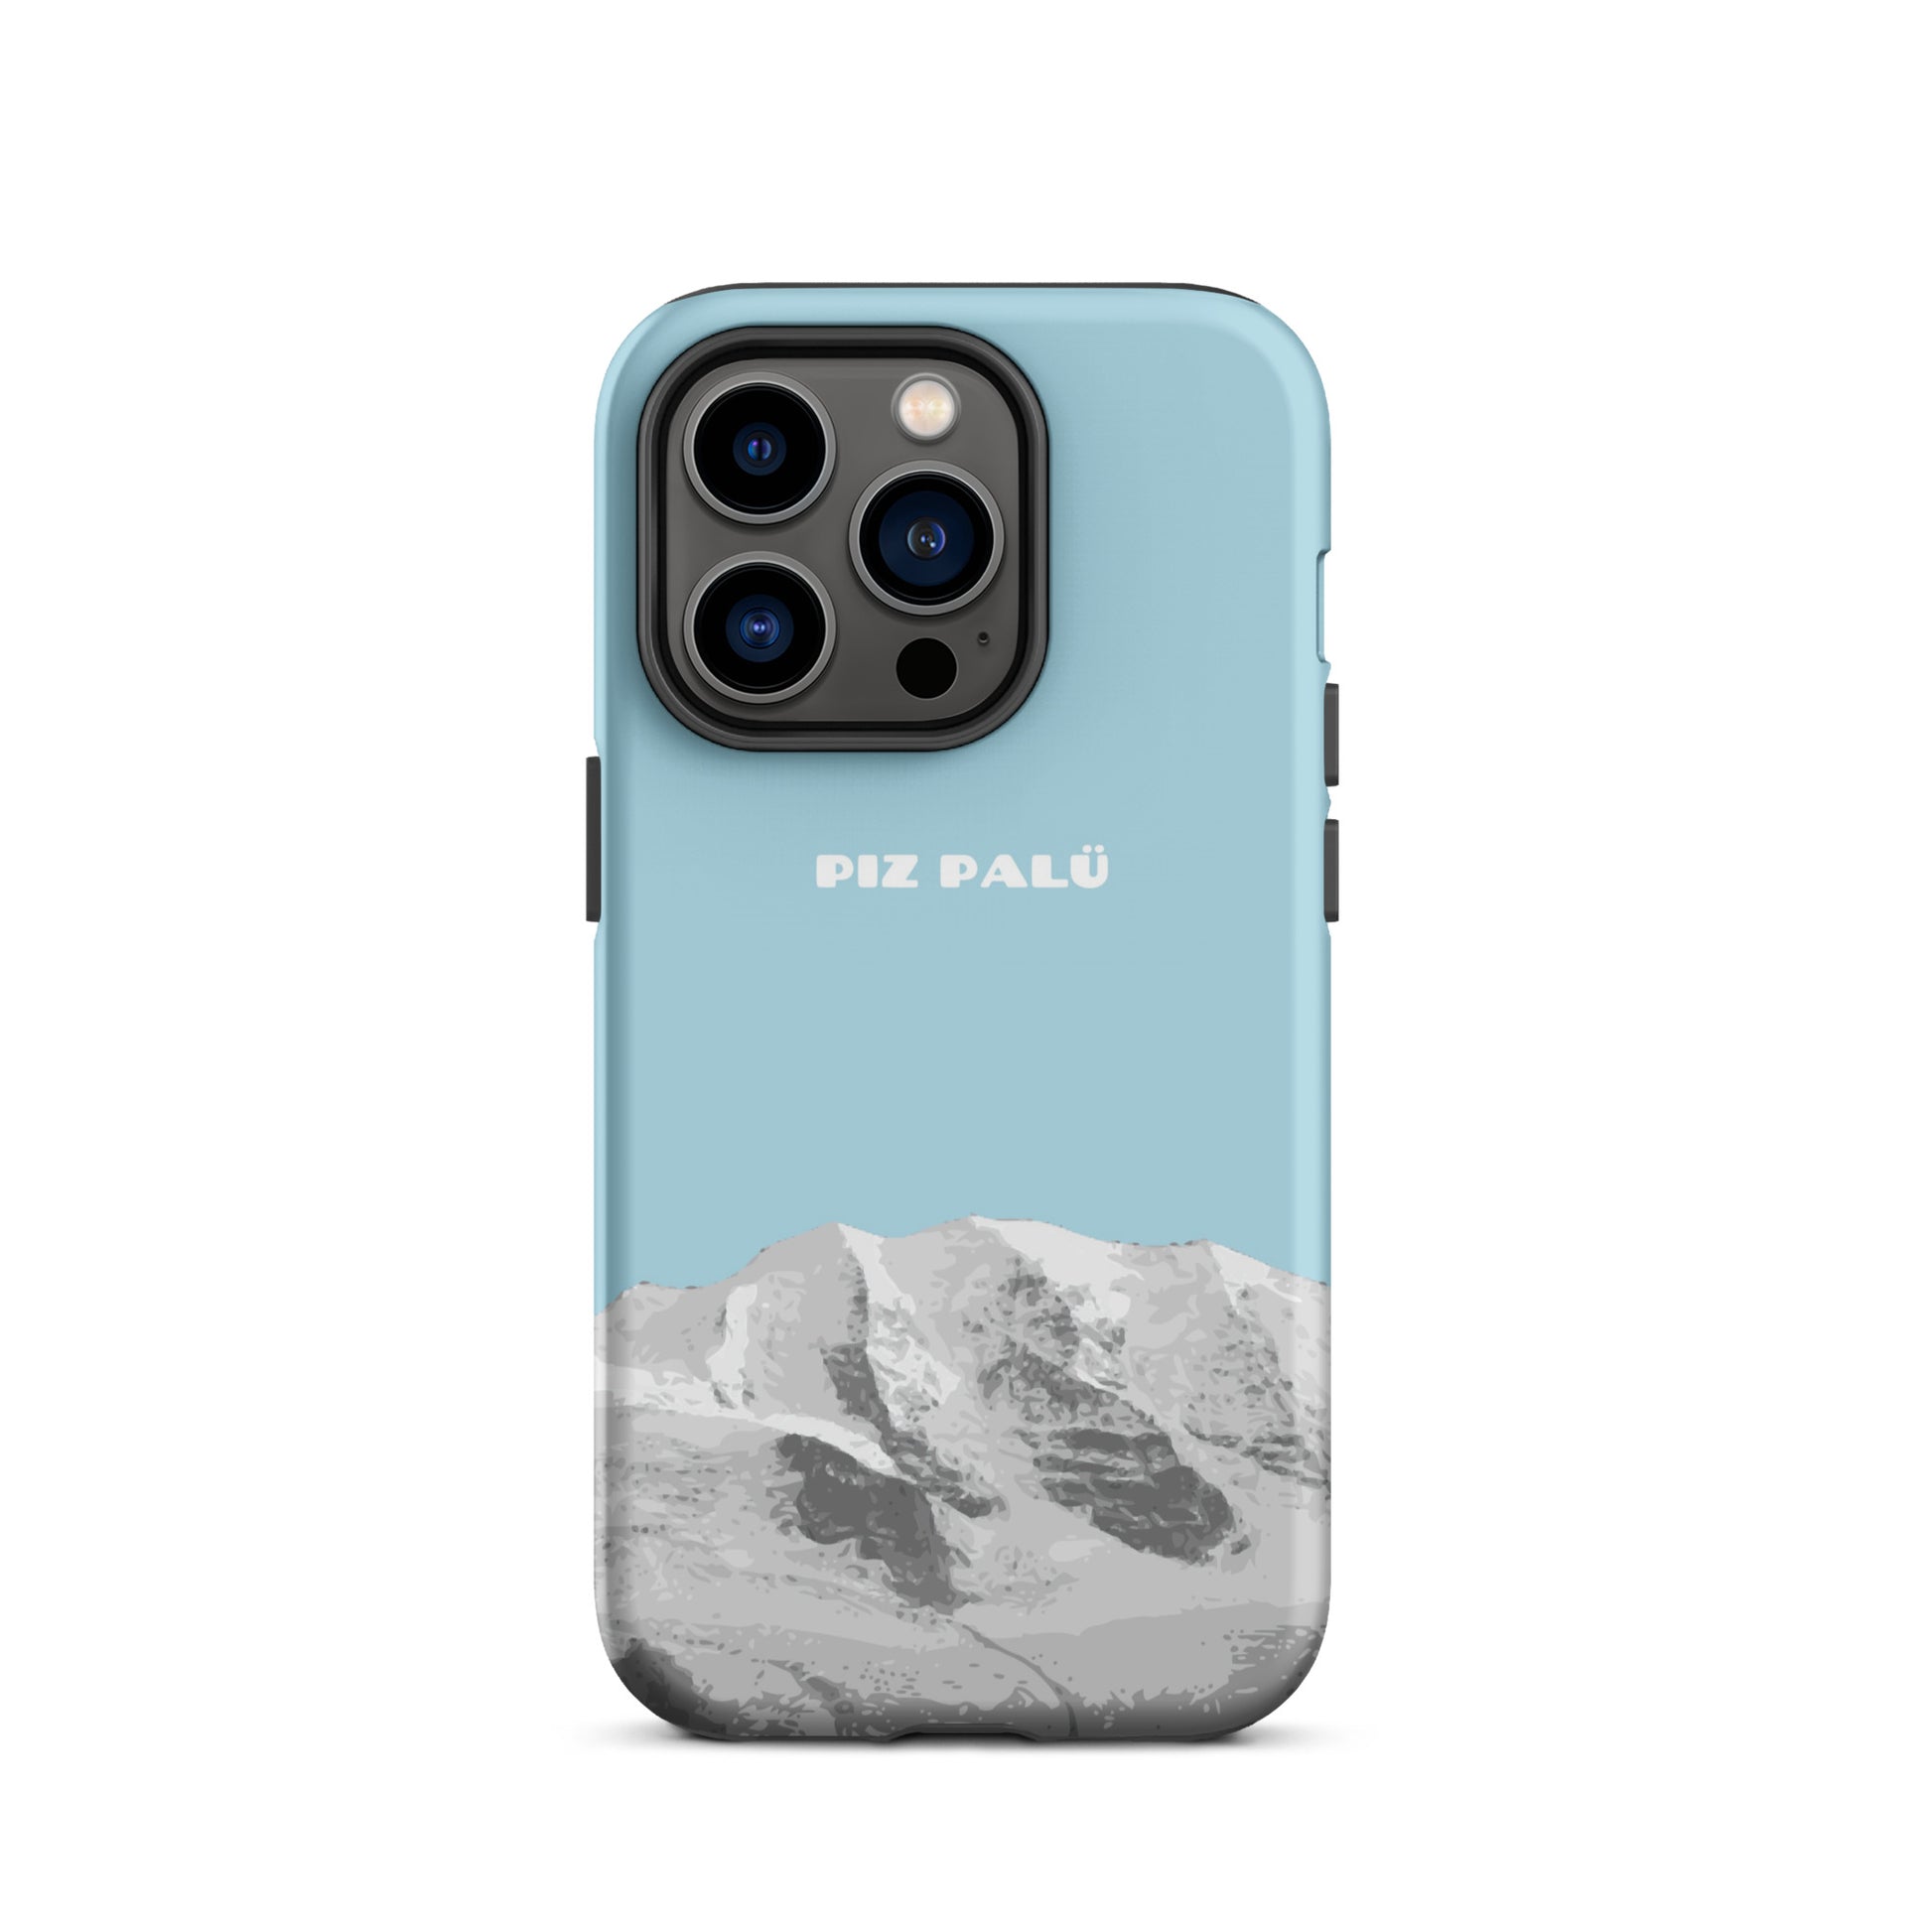 Hülle für das iPhone 14 Pro von Apple in der Farbe Hellblau, dass den Piz Palü in Graubünden zeigt.